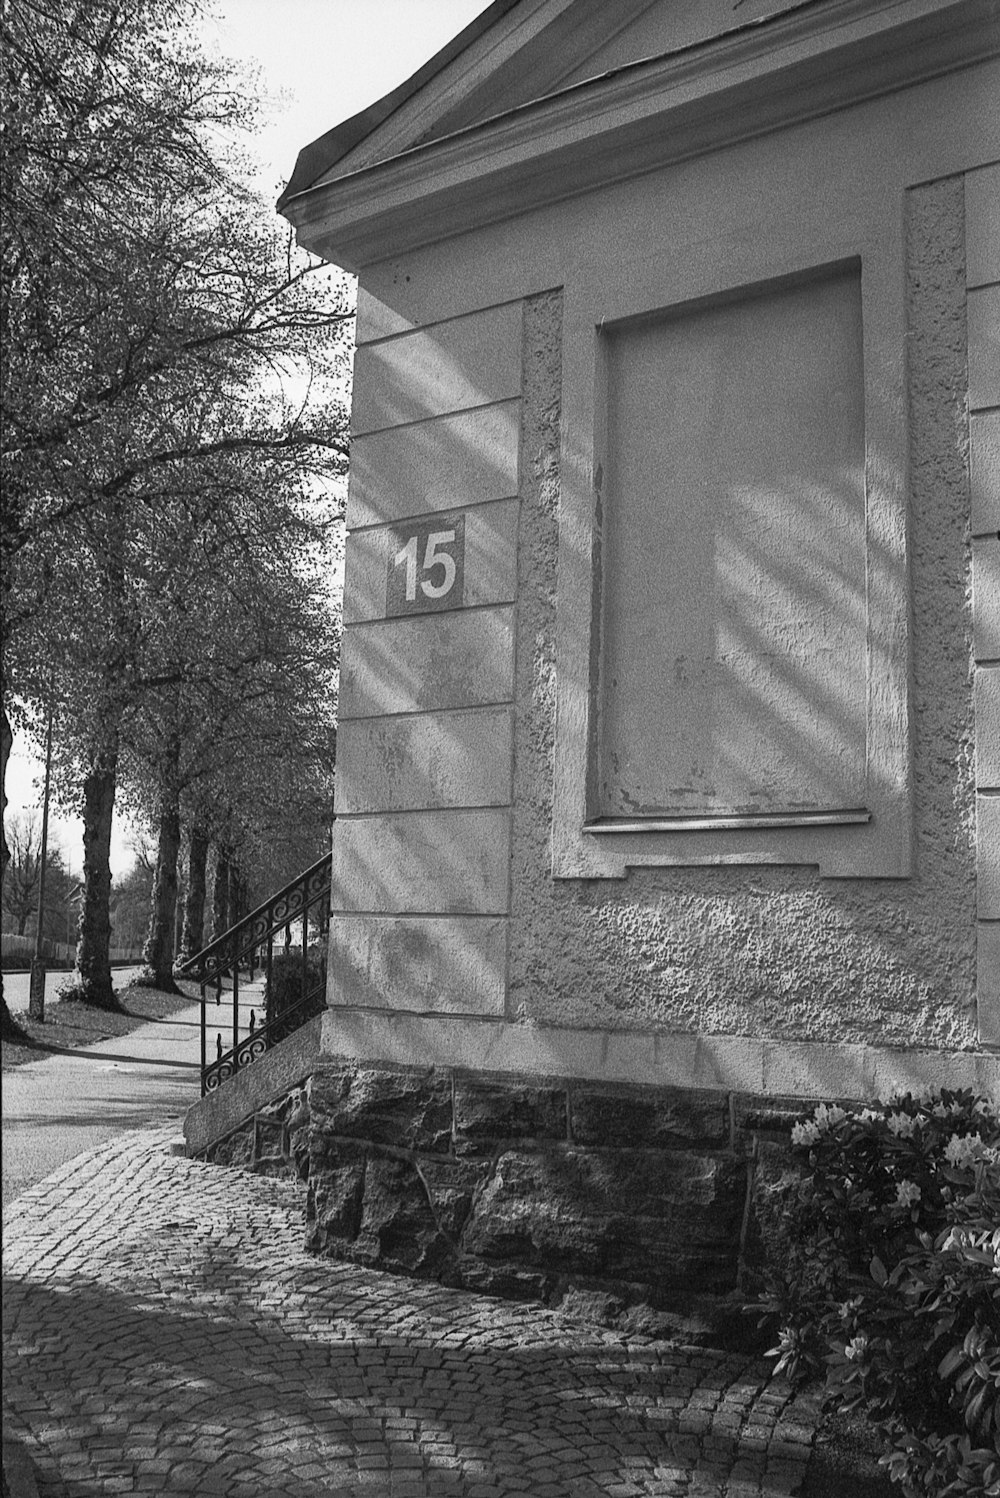 una foto in bianco e nero di un edificio con un numero su di esso